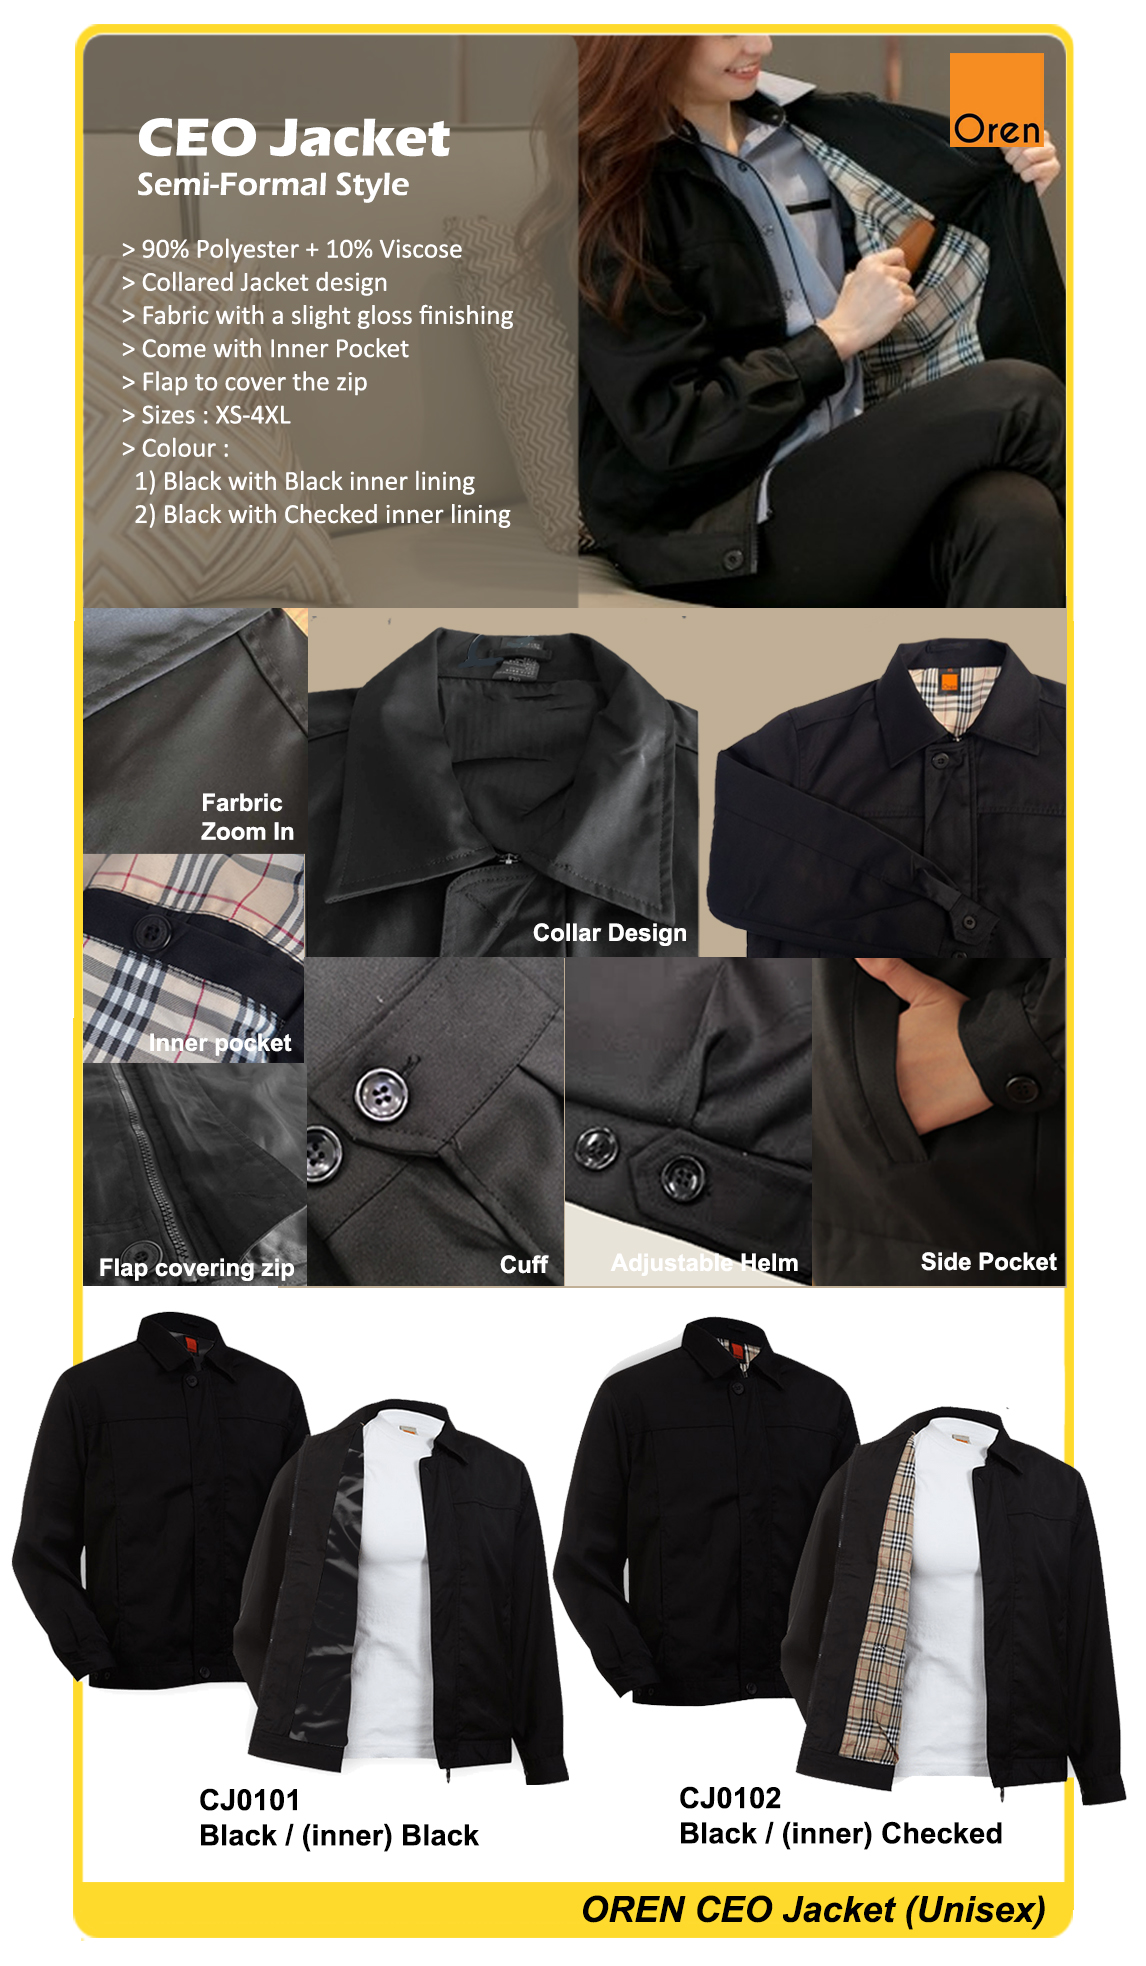 Corporate Jacket Singapore | Office Jacket | Blazer Jacket